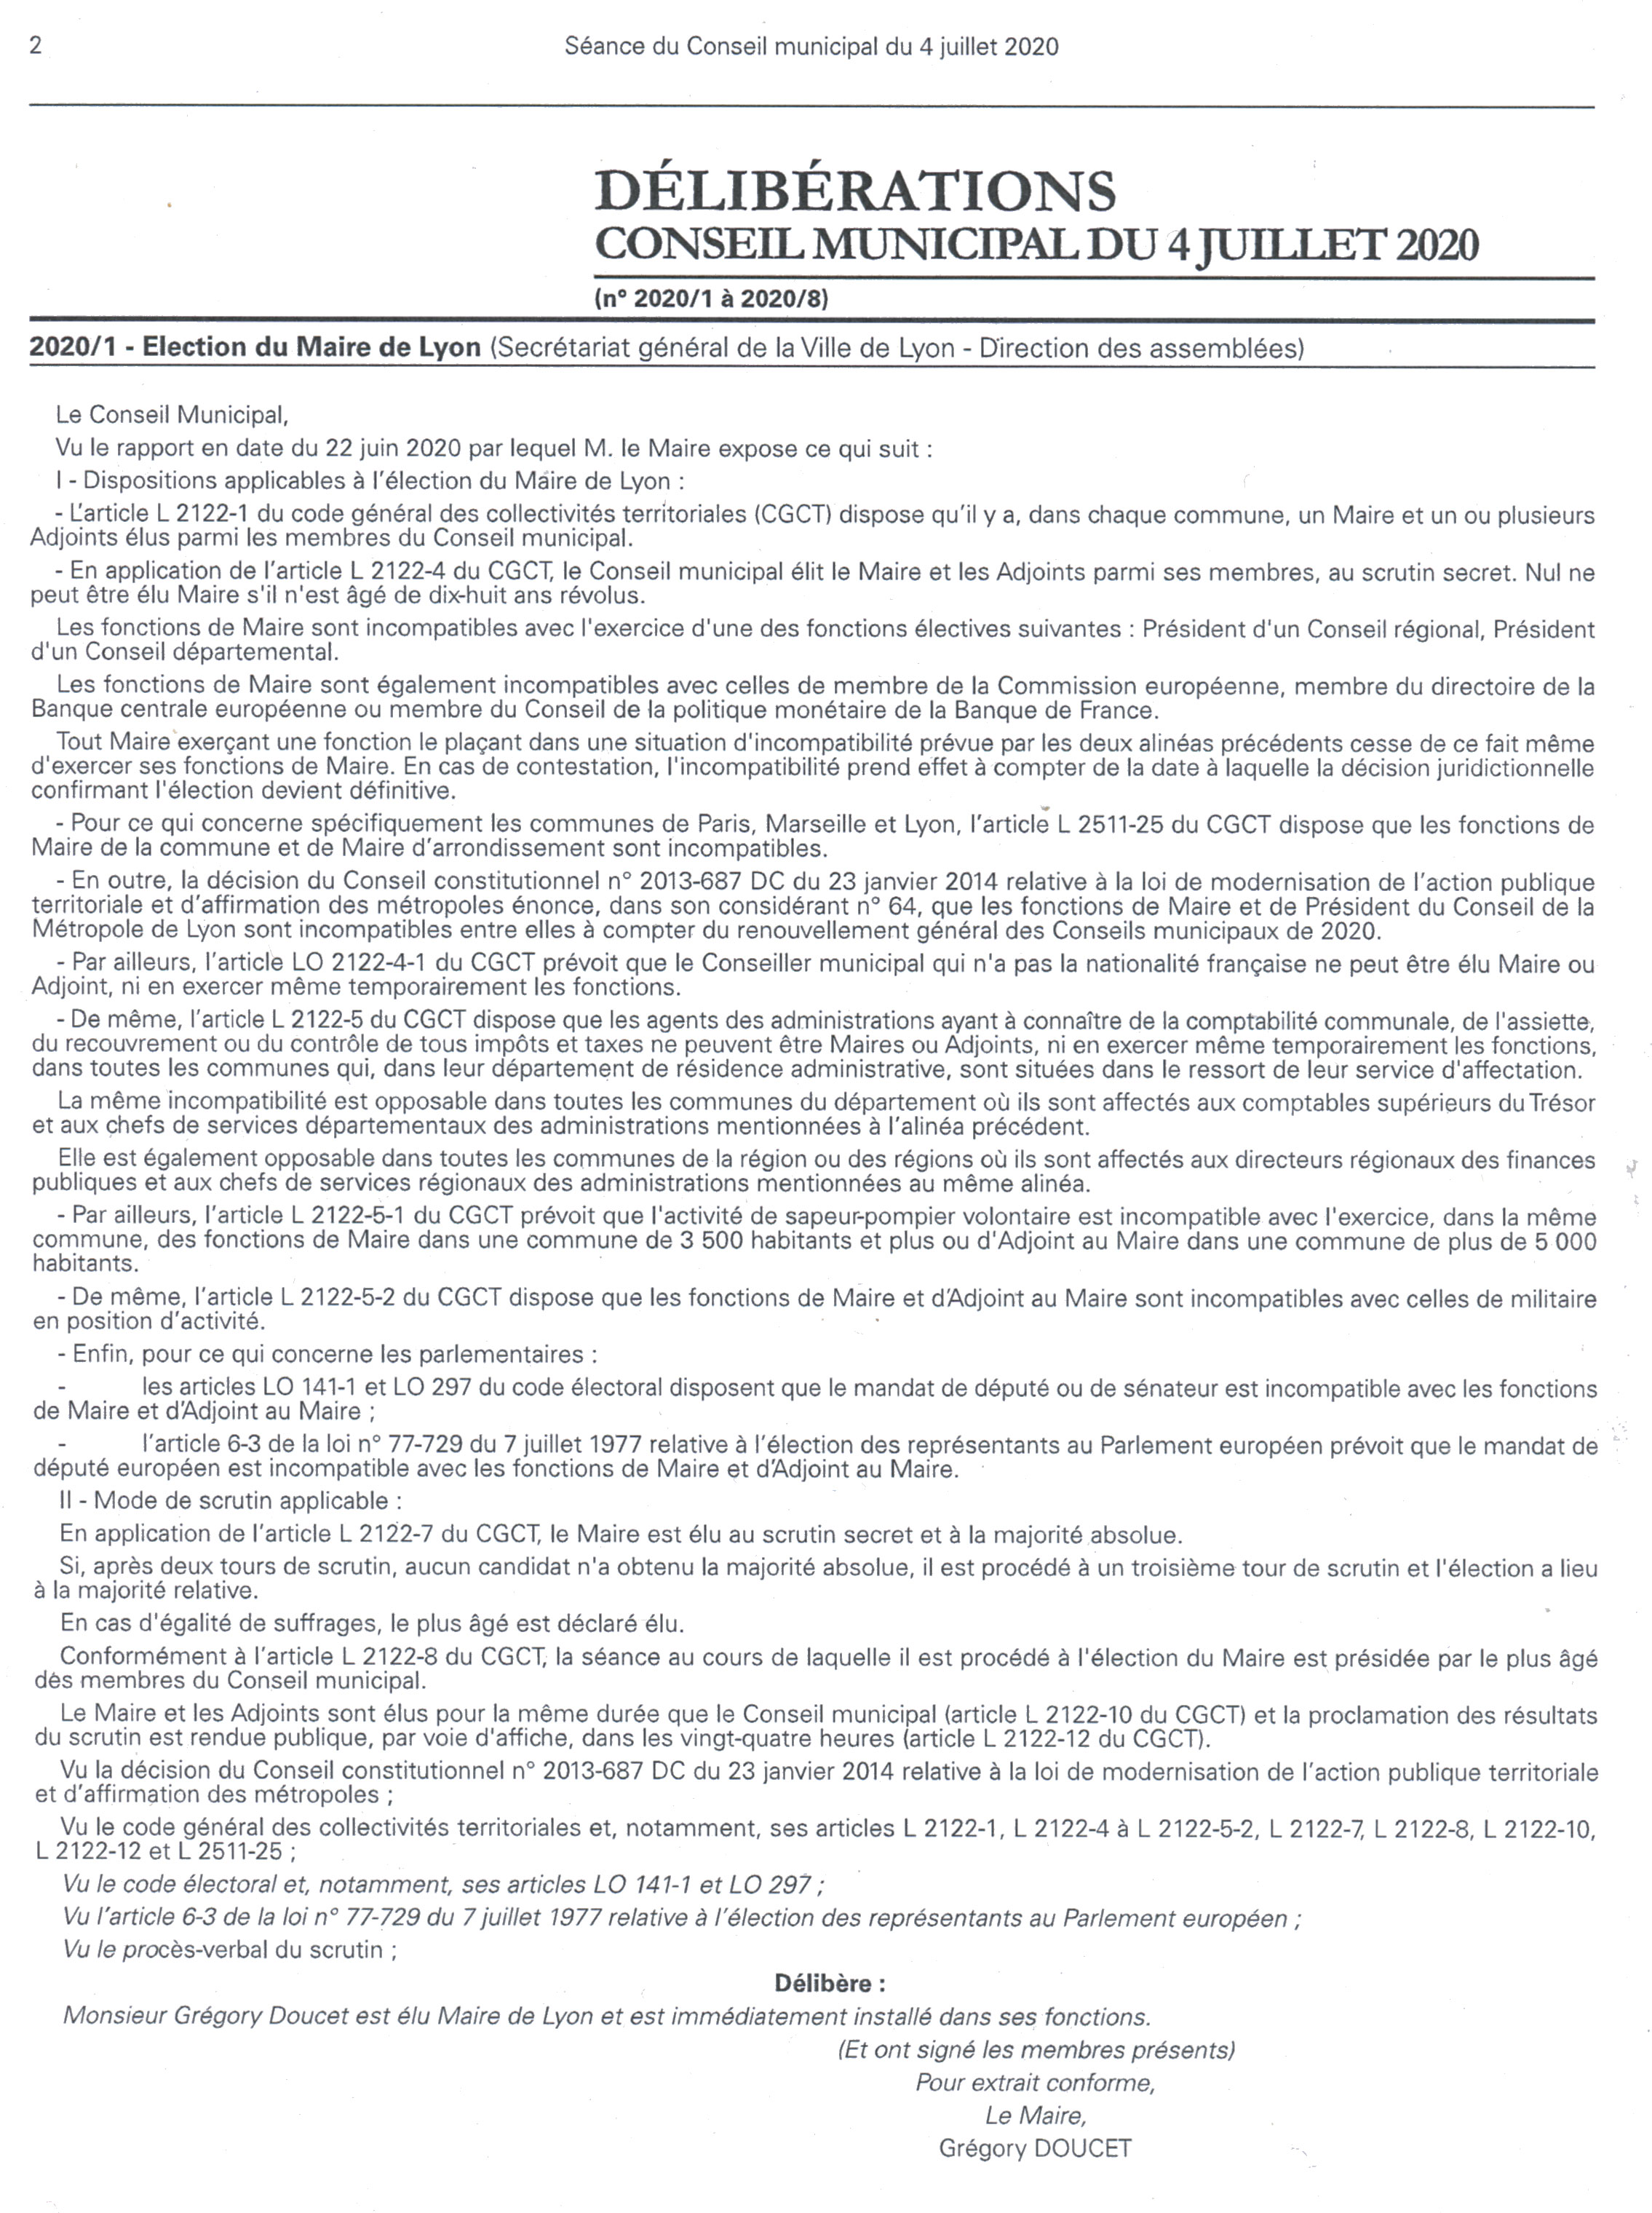 Procès-verbal d'élection de Grégory Doucet le 28 juin 2020, extrait du Bulletin municipal officiel (4/07/2020, cote : 2C/401683/SAL)